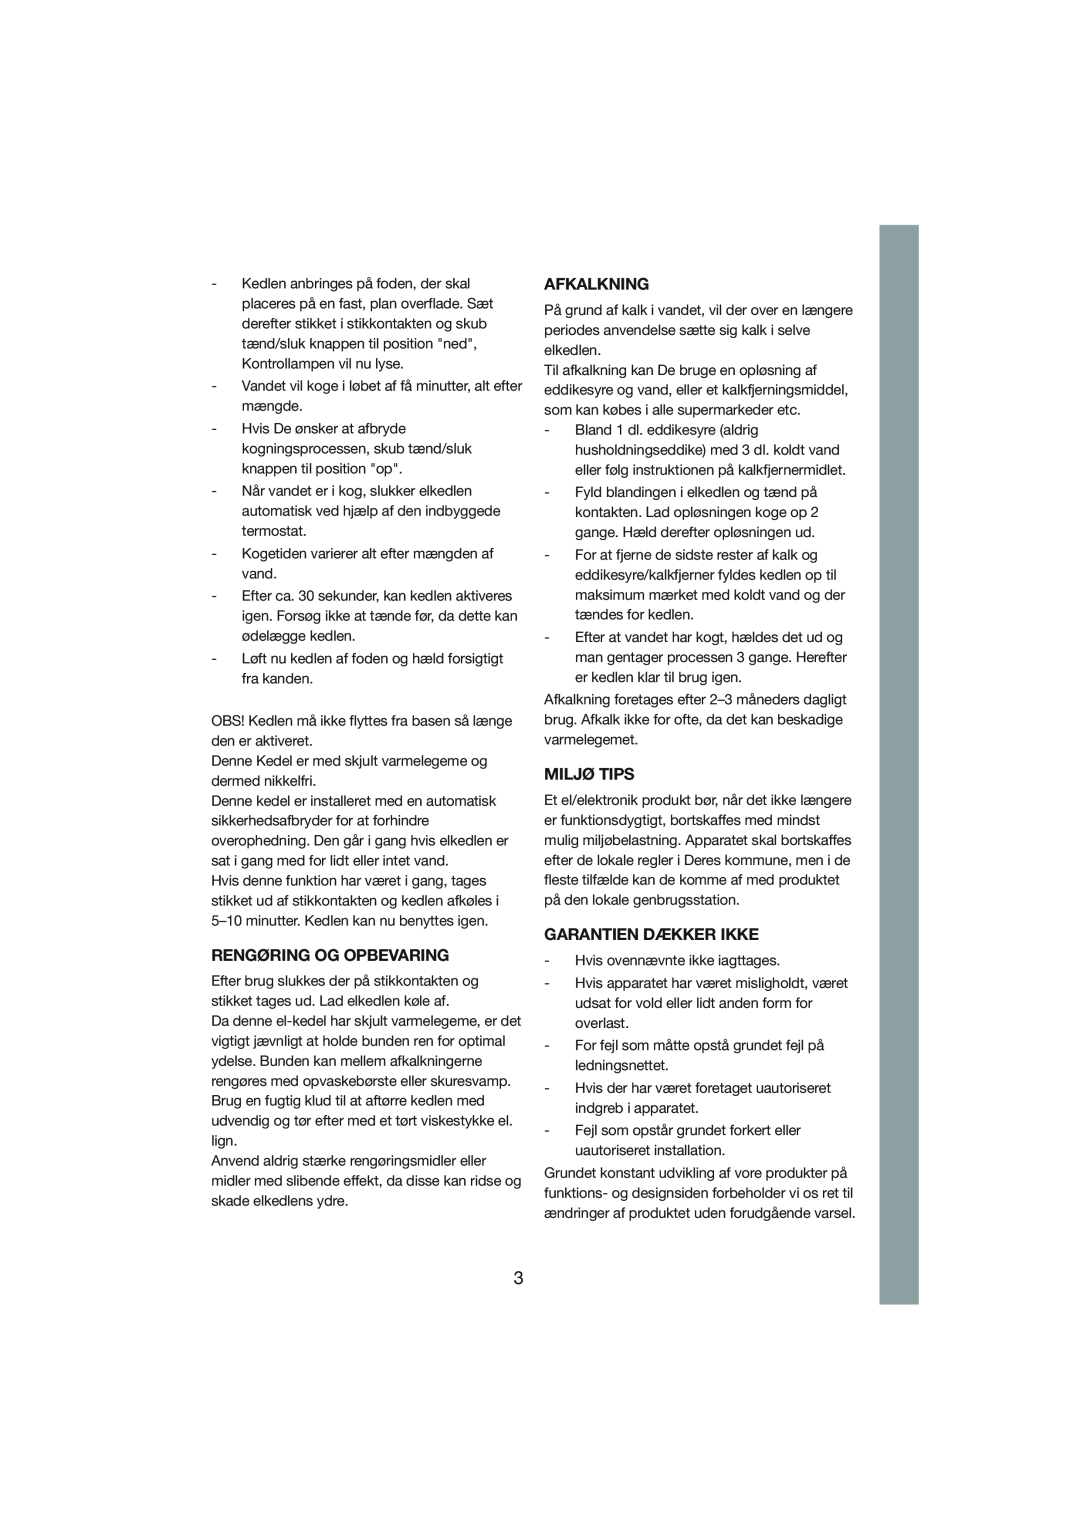 Melissa 245-015 manual Rengøring Og Opbevaring, Afkalkning, Miljø Tips, Garantien Dækker Ikke 